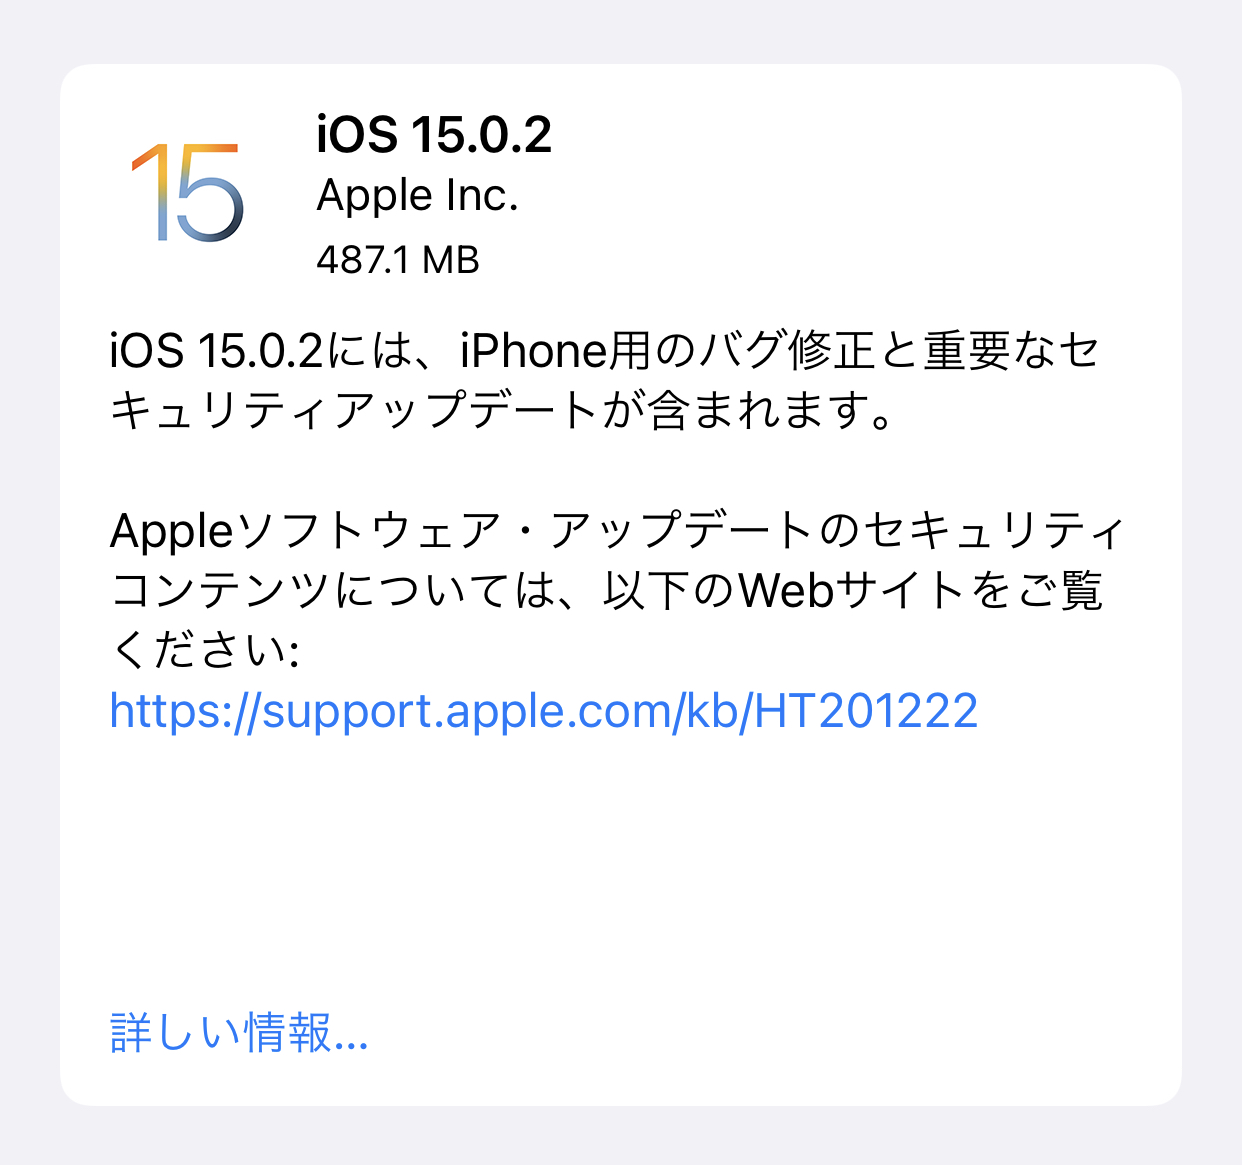 Appleが、「iOS 15.0.2」ソフトウェア・アップデートを公開しました。